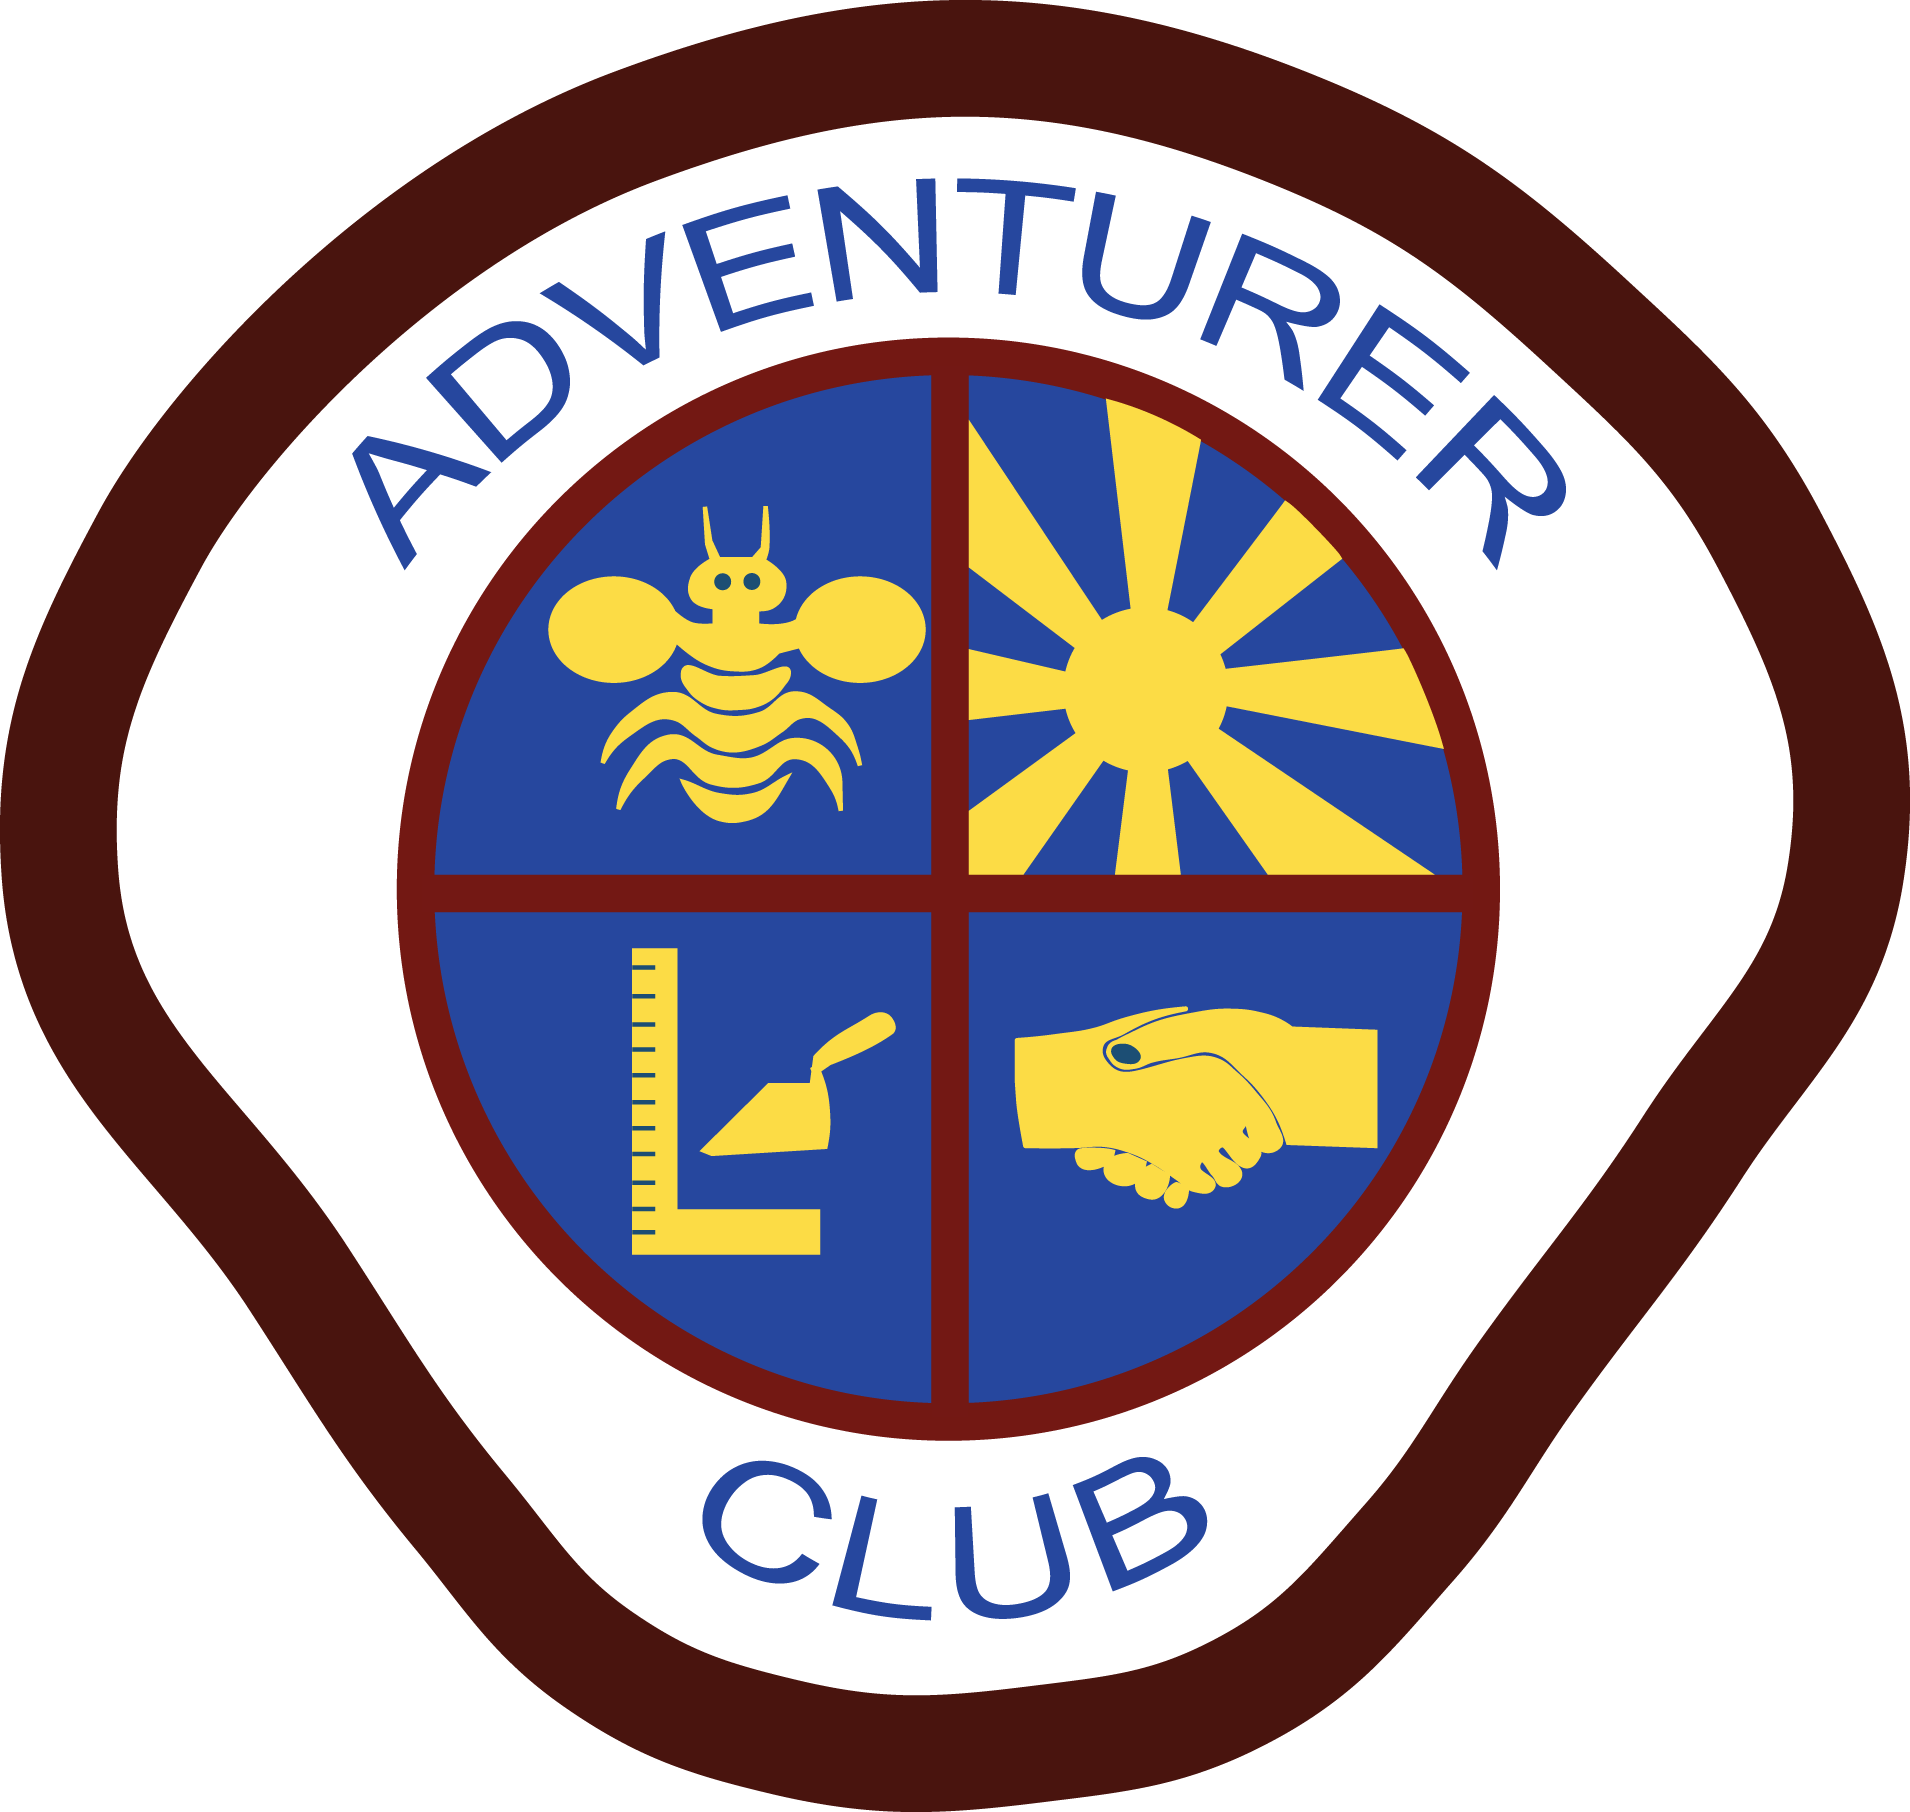 Sda Logo Png - Pathfinder Master Guide Adventurer Logo Clipart (1910x1812), Png Download